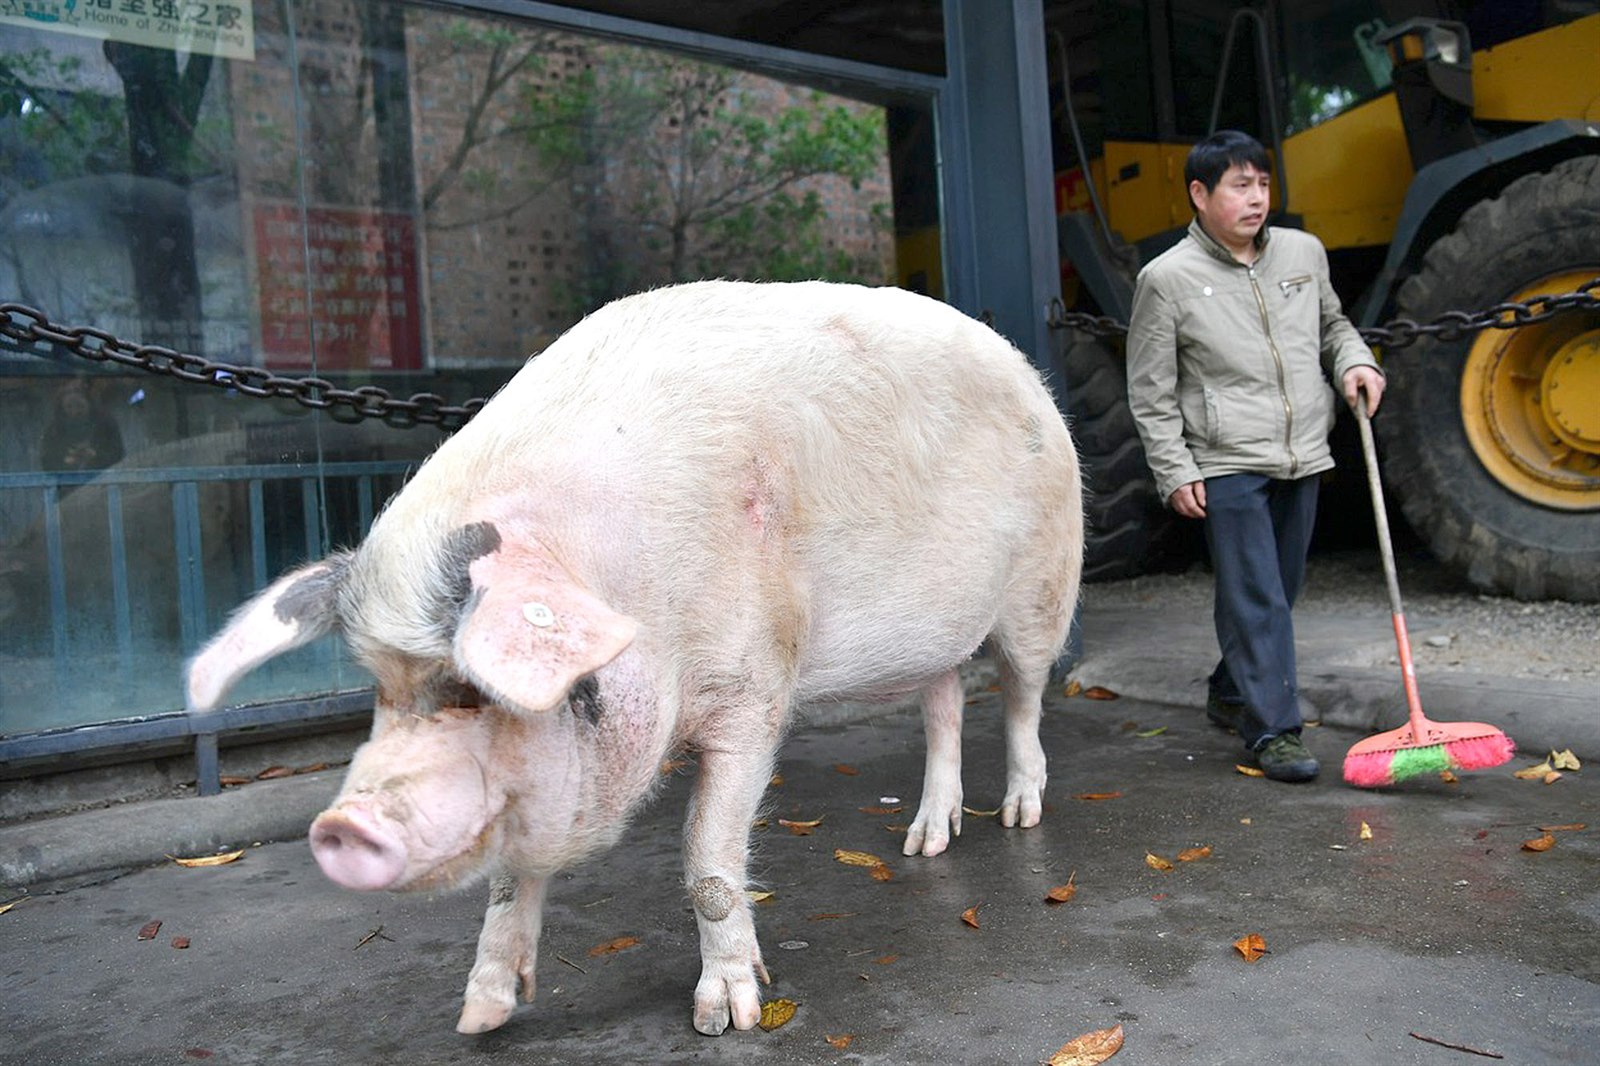 Čínské farmy chovají gigantická prasata, velká jako lední medvěd - iDNES.cz